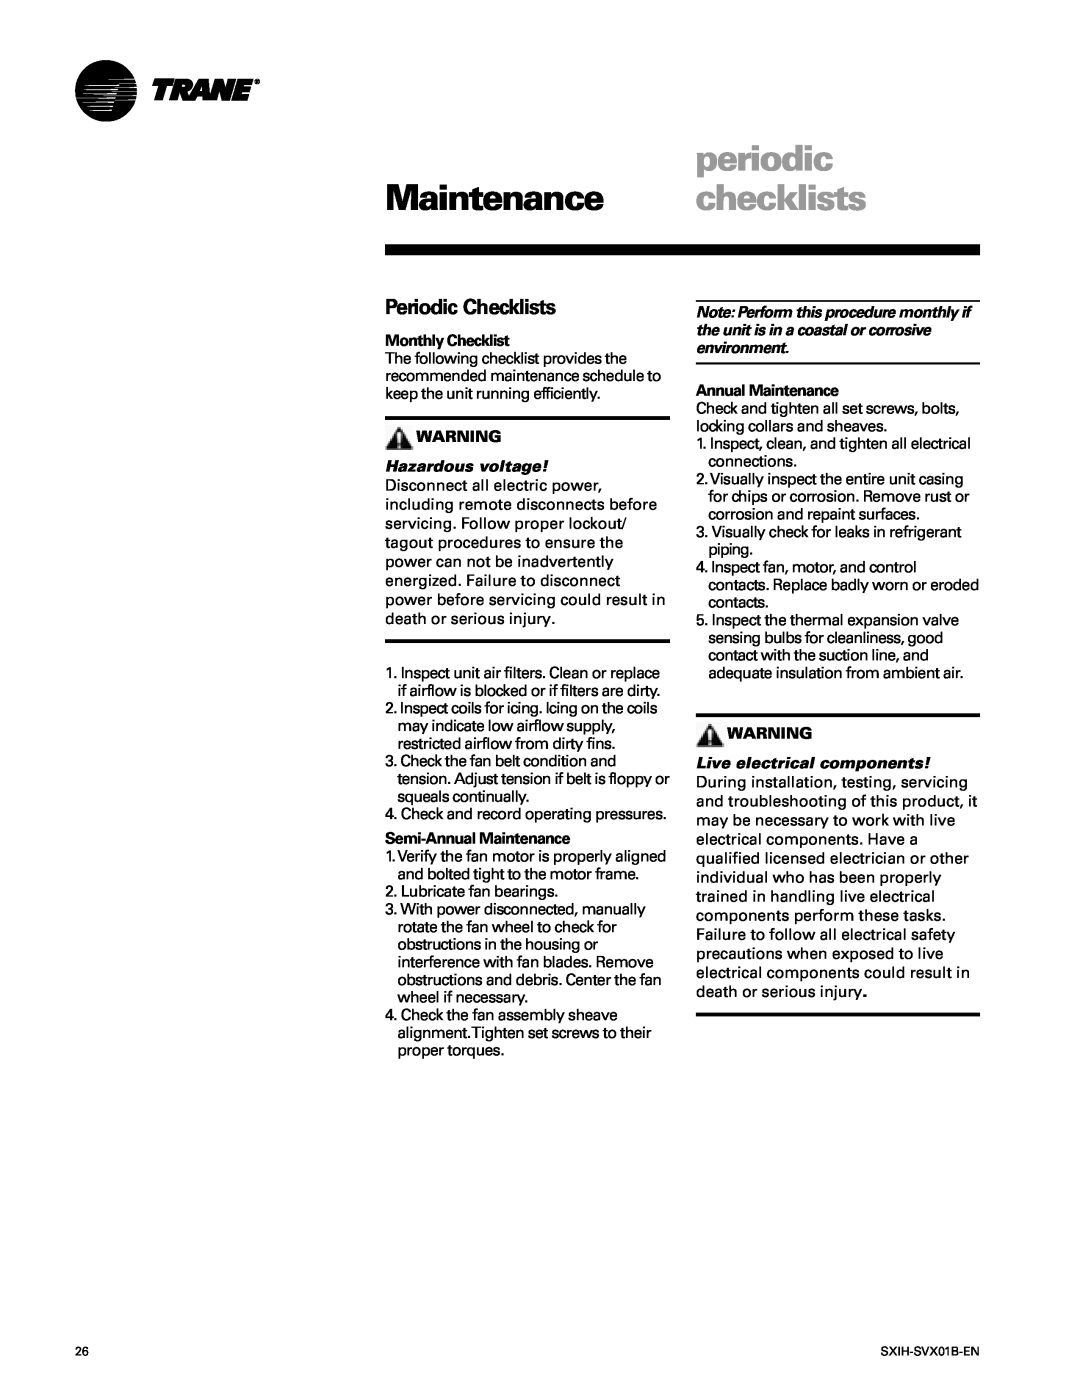 Trane SCIH manual periodic, Maintenance checklists, Periodic Checklists 